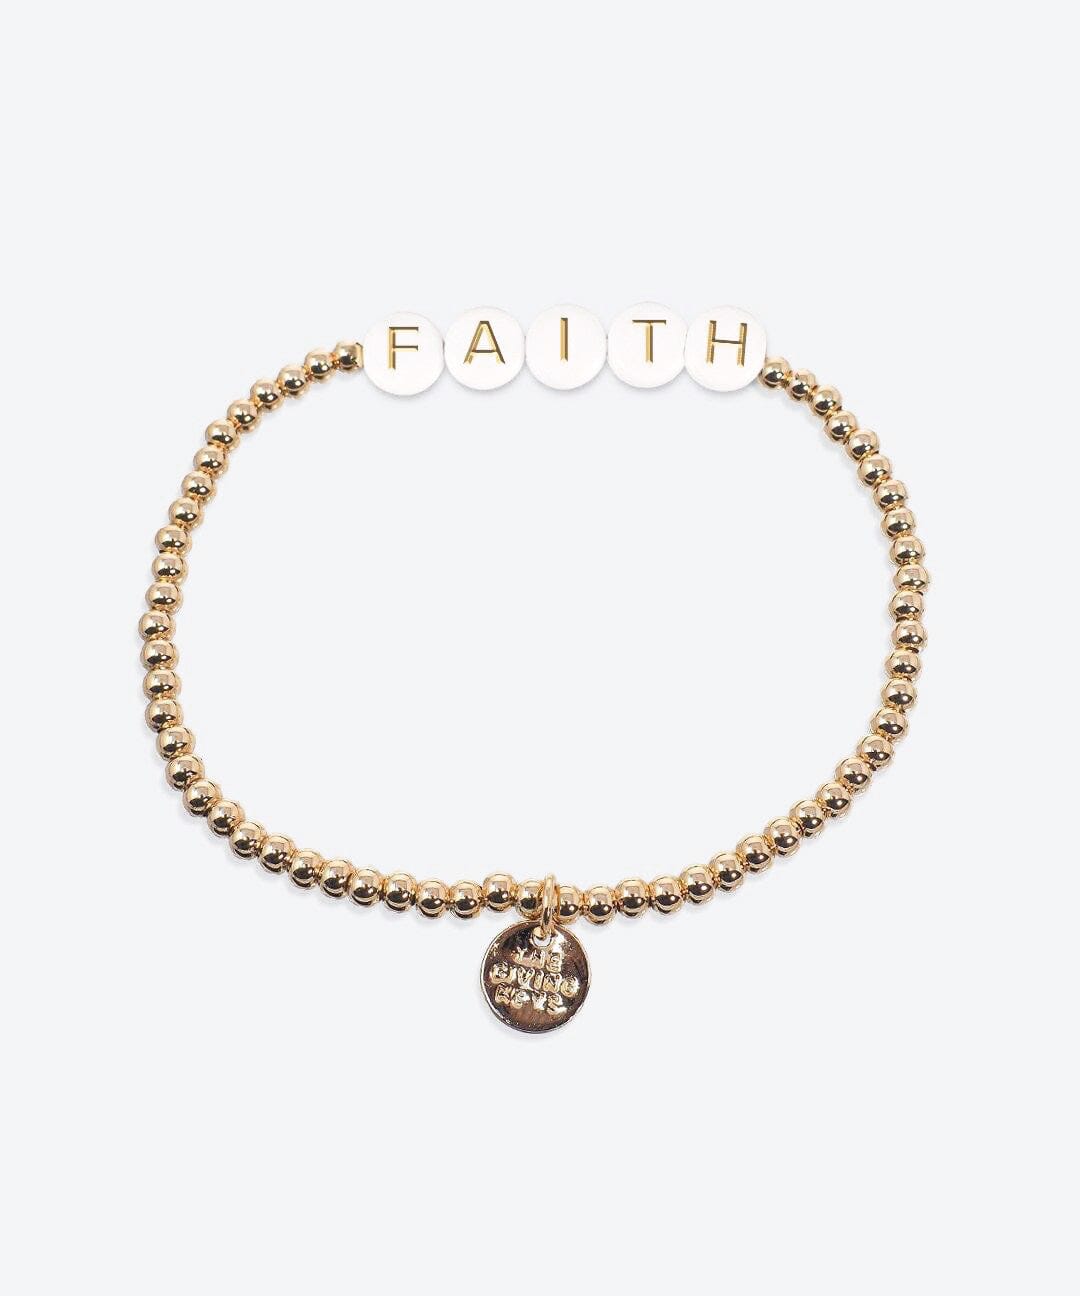 FAITH Beaded Bracelet Bracelets The Giving Keys GOLD 